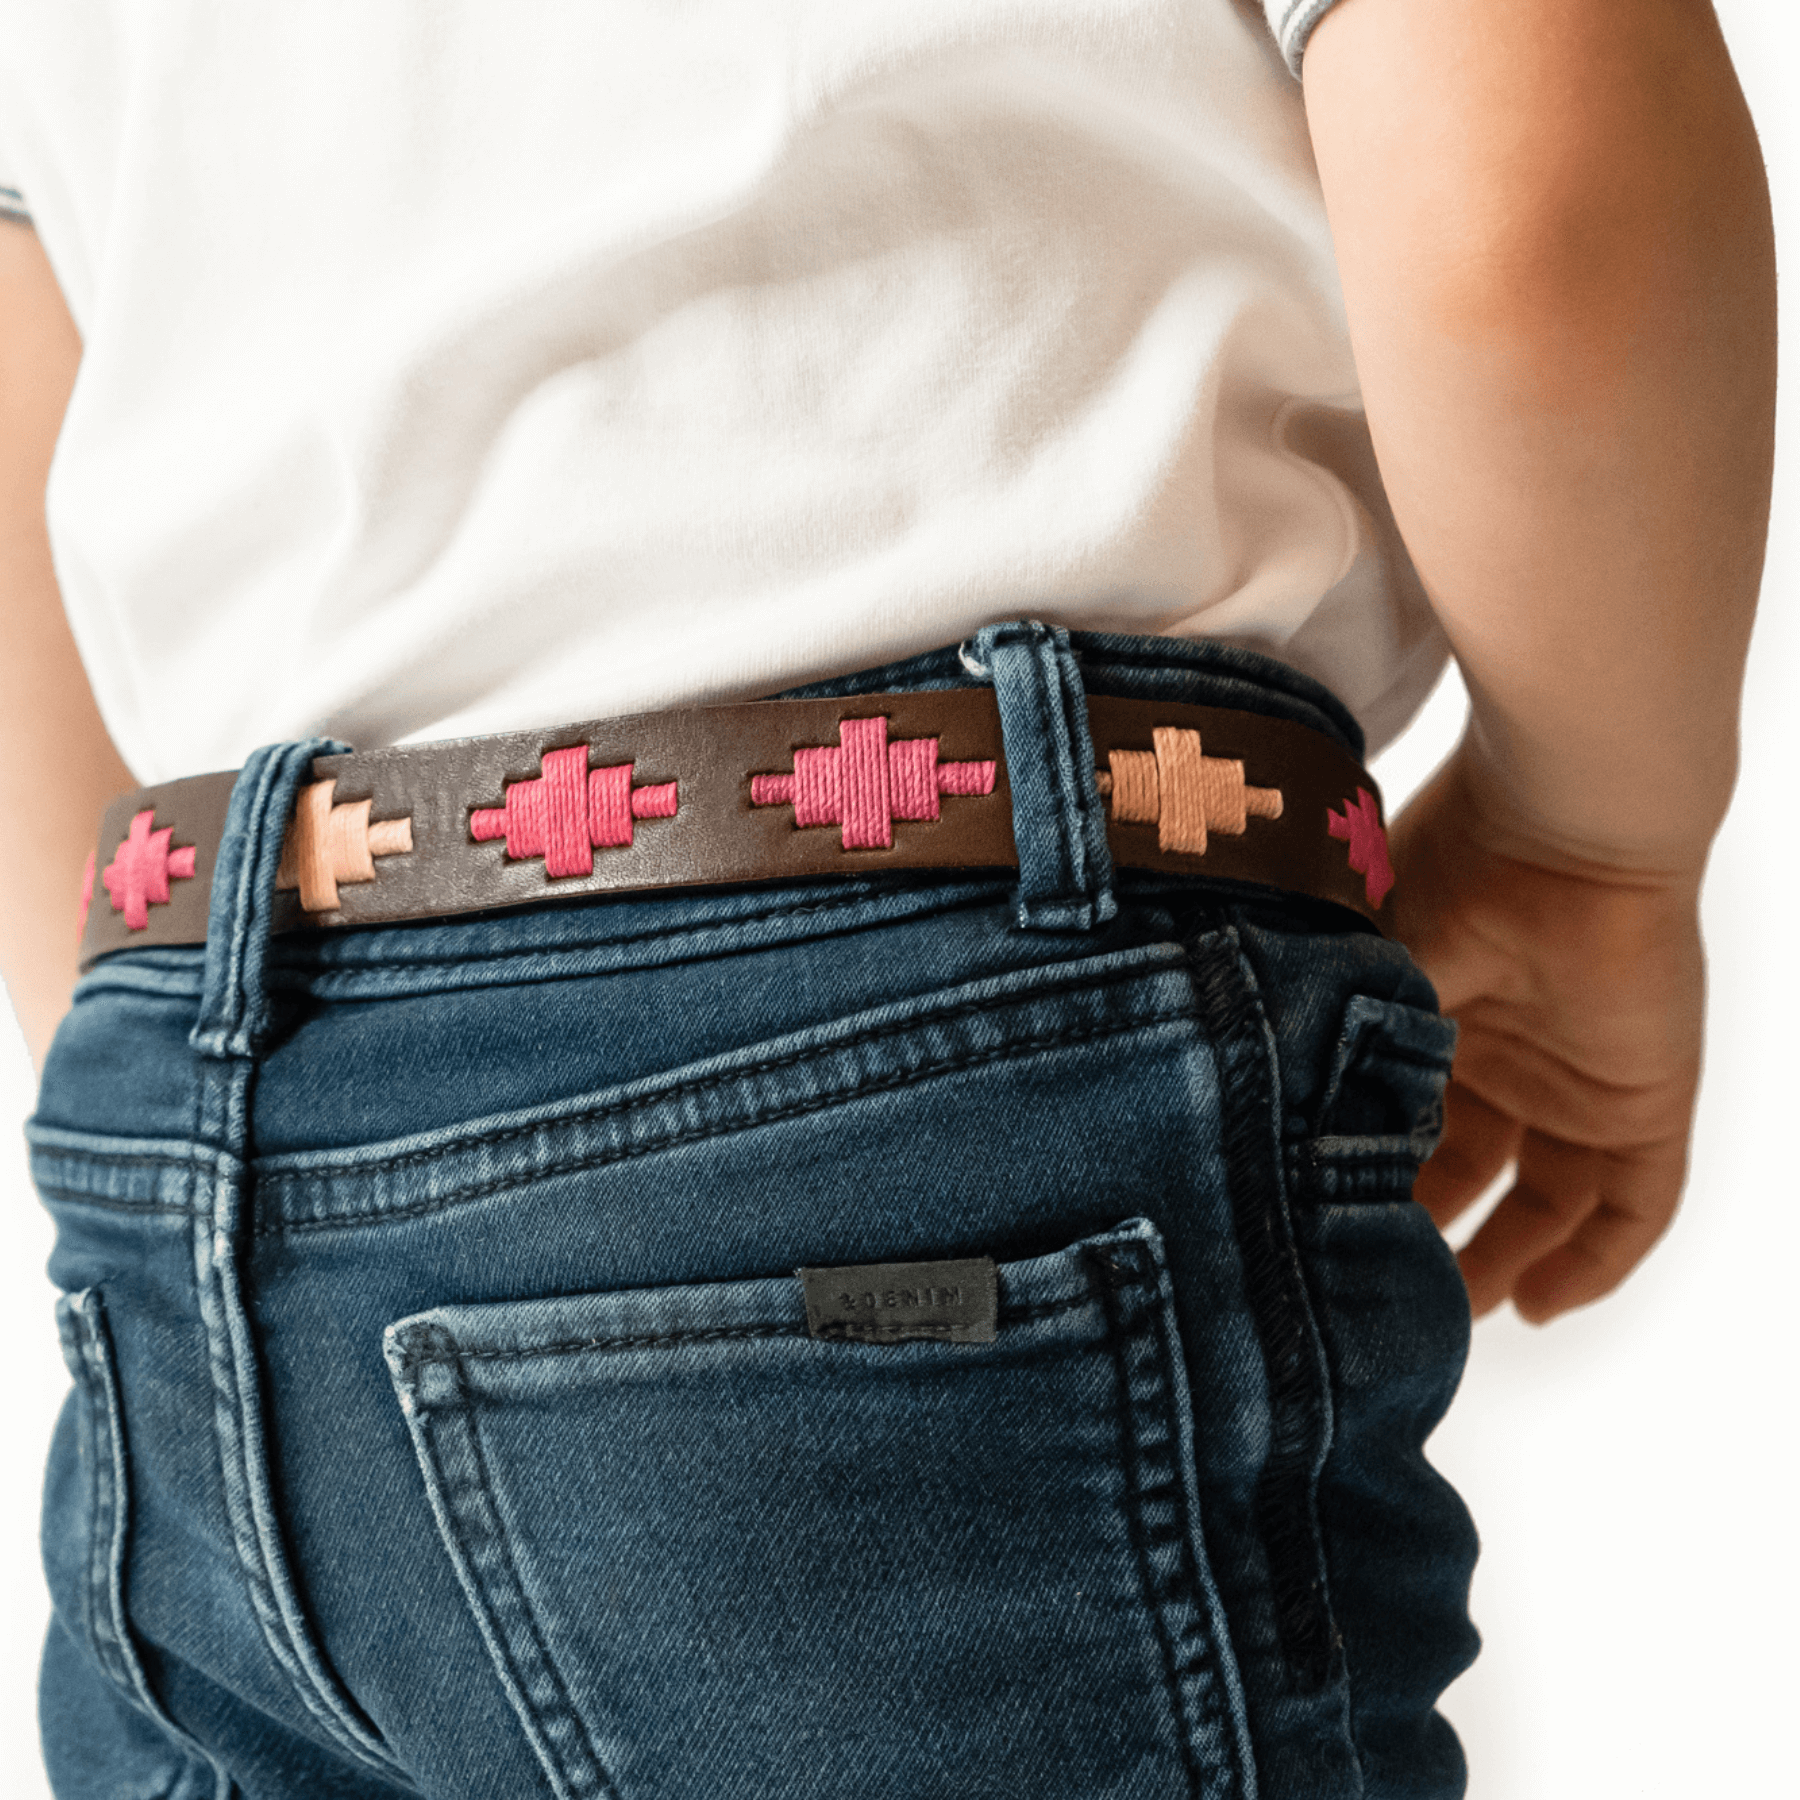 Gaucholife Belts Kids Embroidered Belt (Pink)